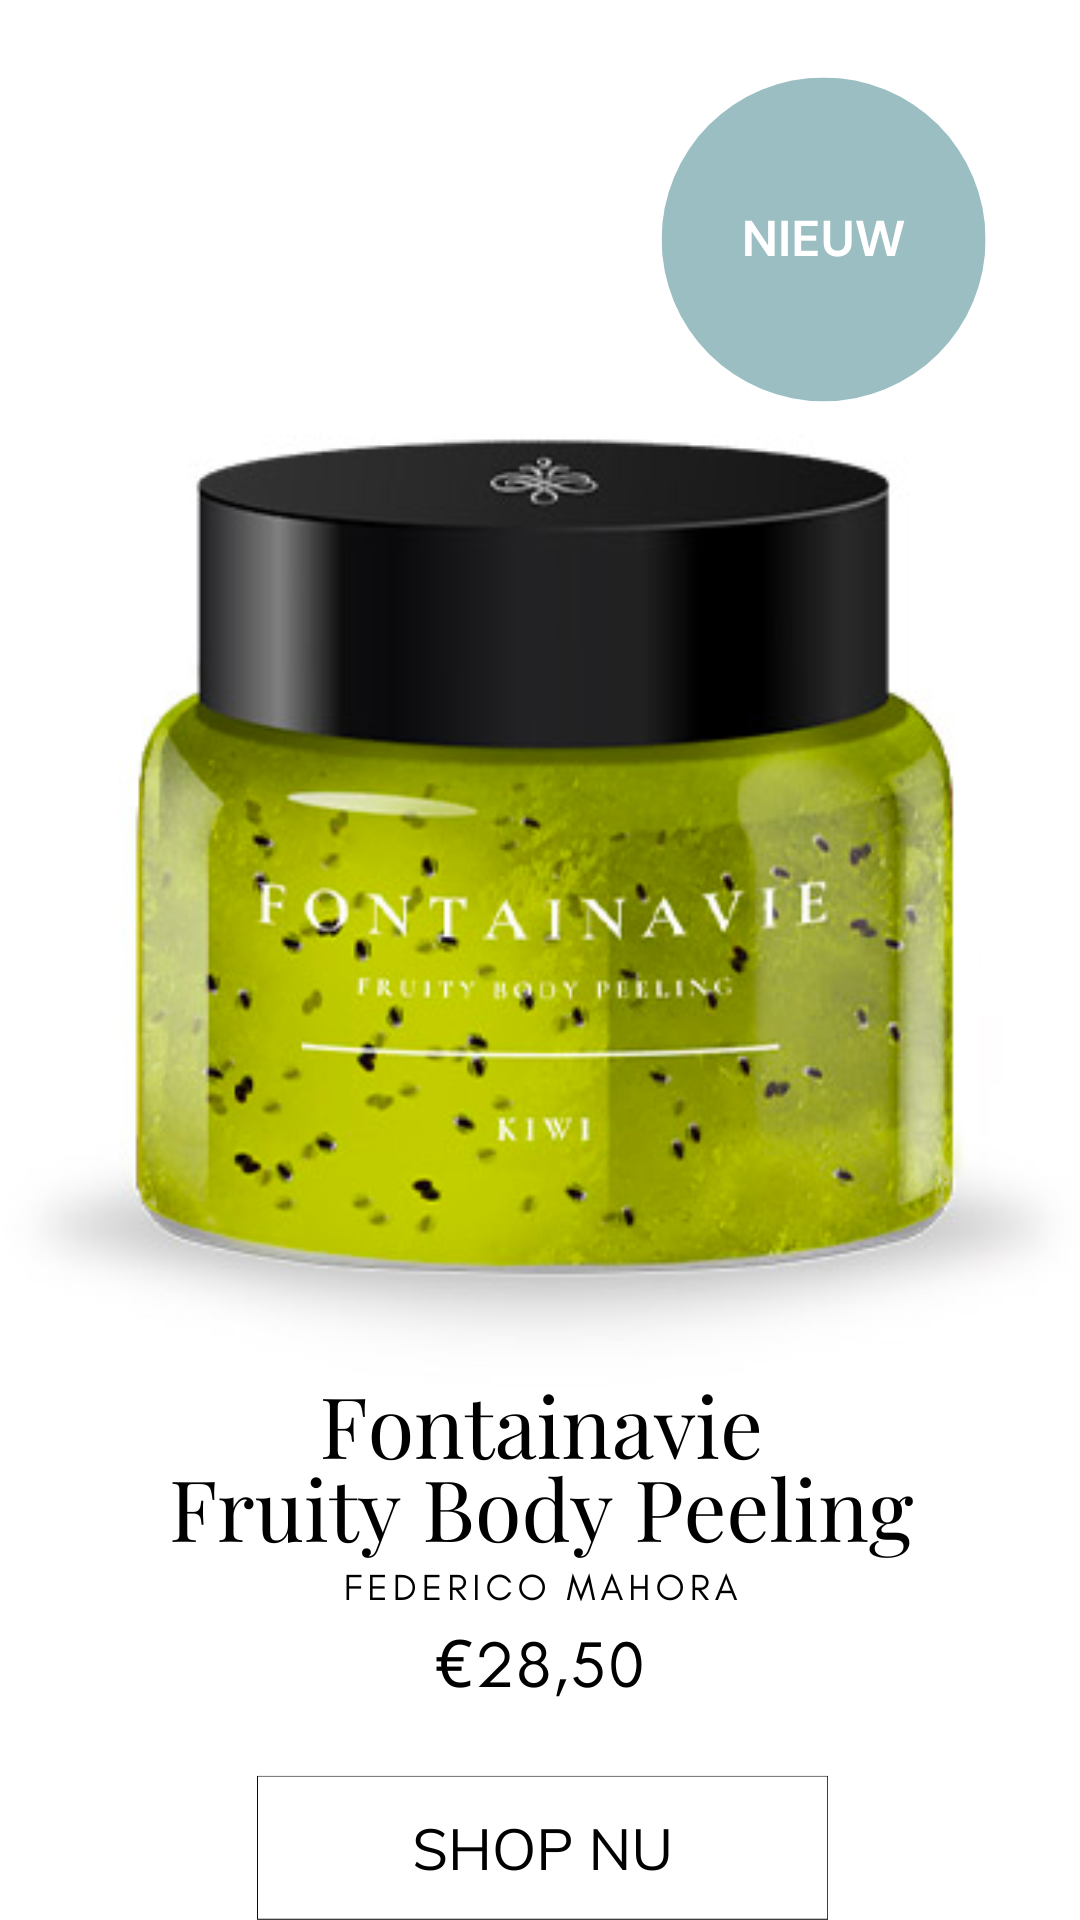 Parfumhuis | Fontainavie Fruity Body Peeling